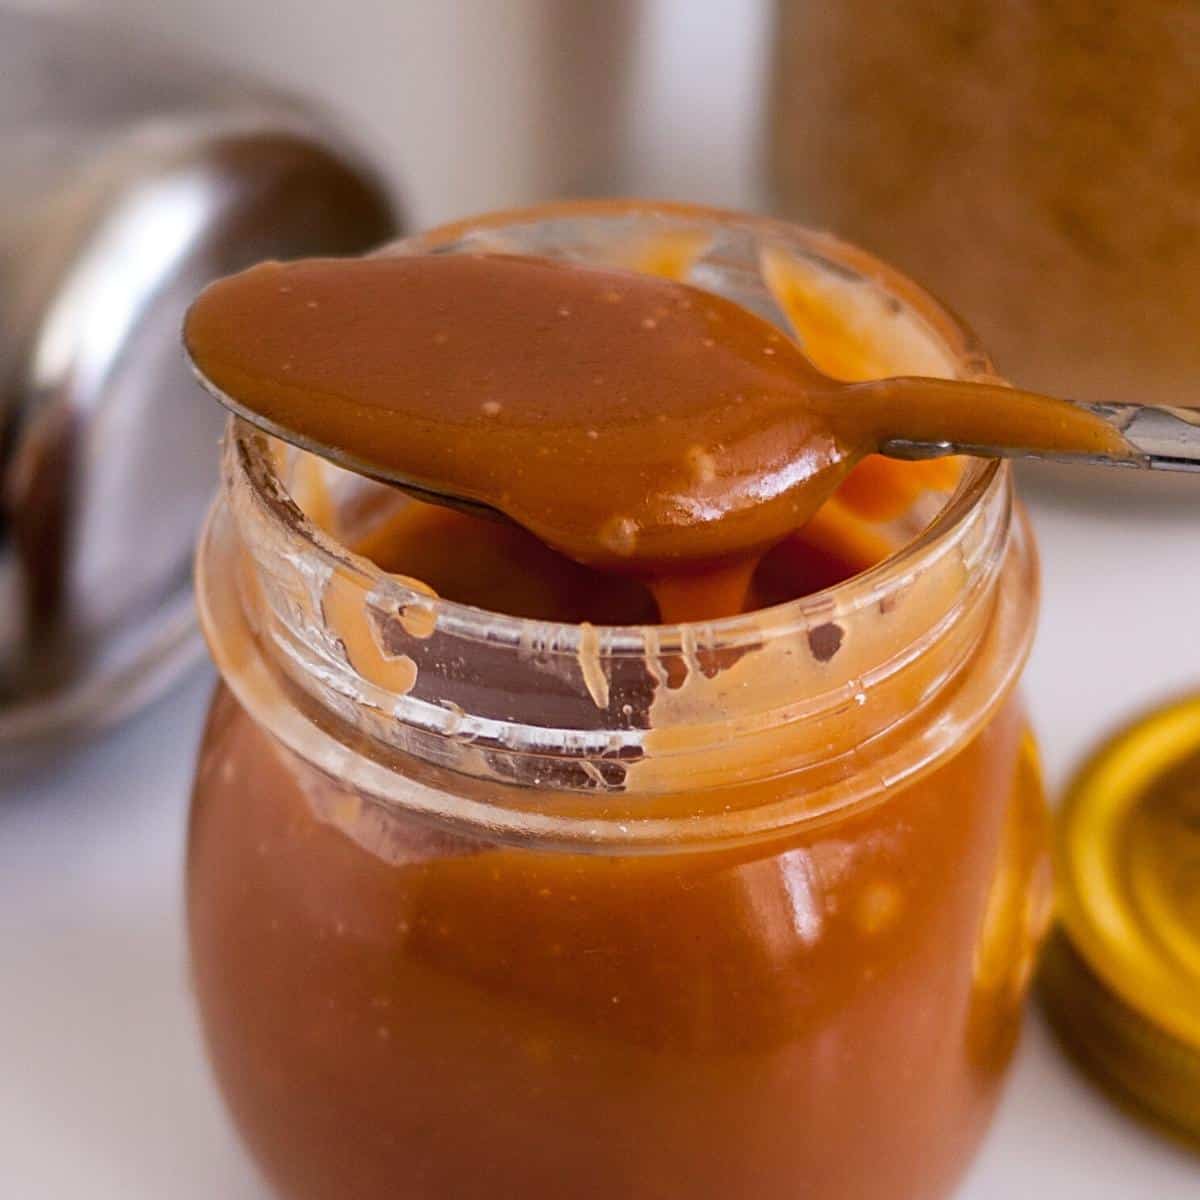 A mason jar with butterscotch sauce.